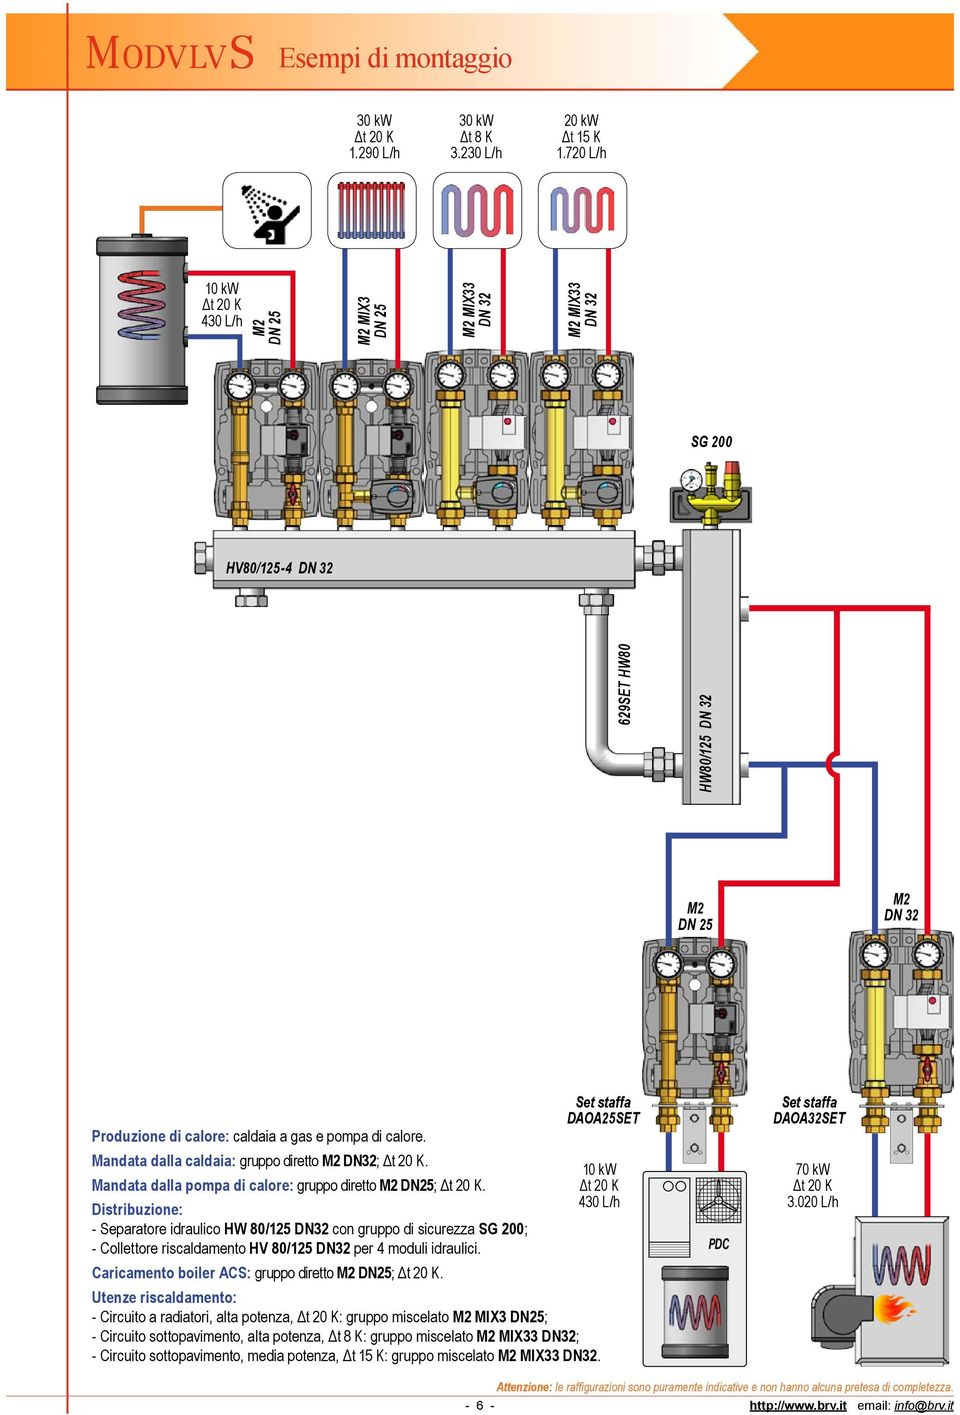 - Separatore idraulico HW 80/125 DN32 con gruppo di sicurezza SG 200; - Collettore riscaldamento HV 80/125 DN32 per 4 moduli idraulici. Caricamento boiler ACS: gruppo diretto DN25;.